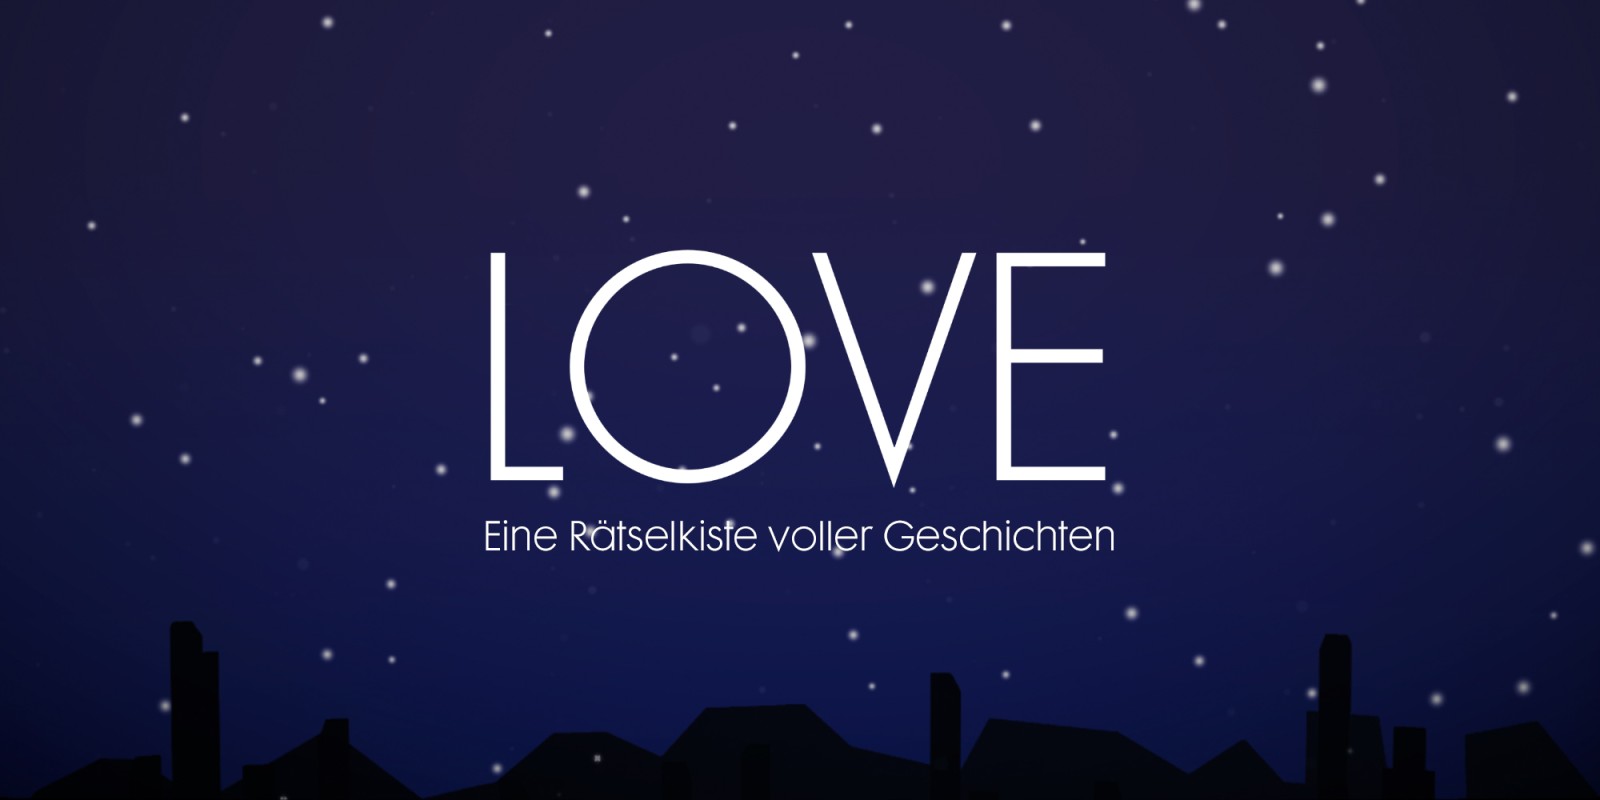 LOVE – Eine Rätselkiste voller Geschichten